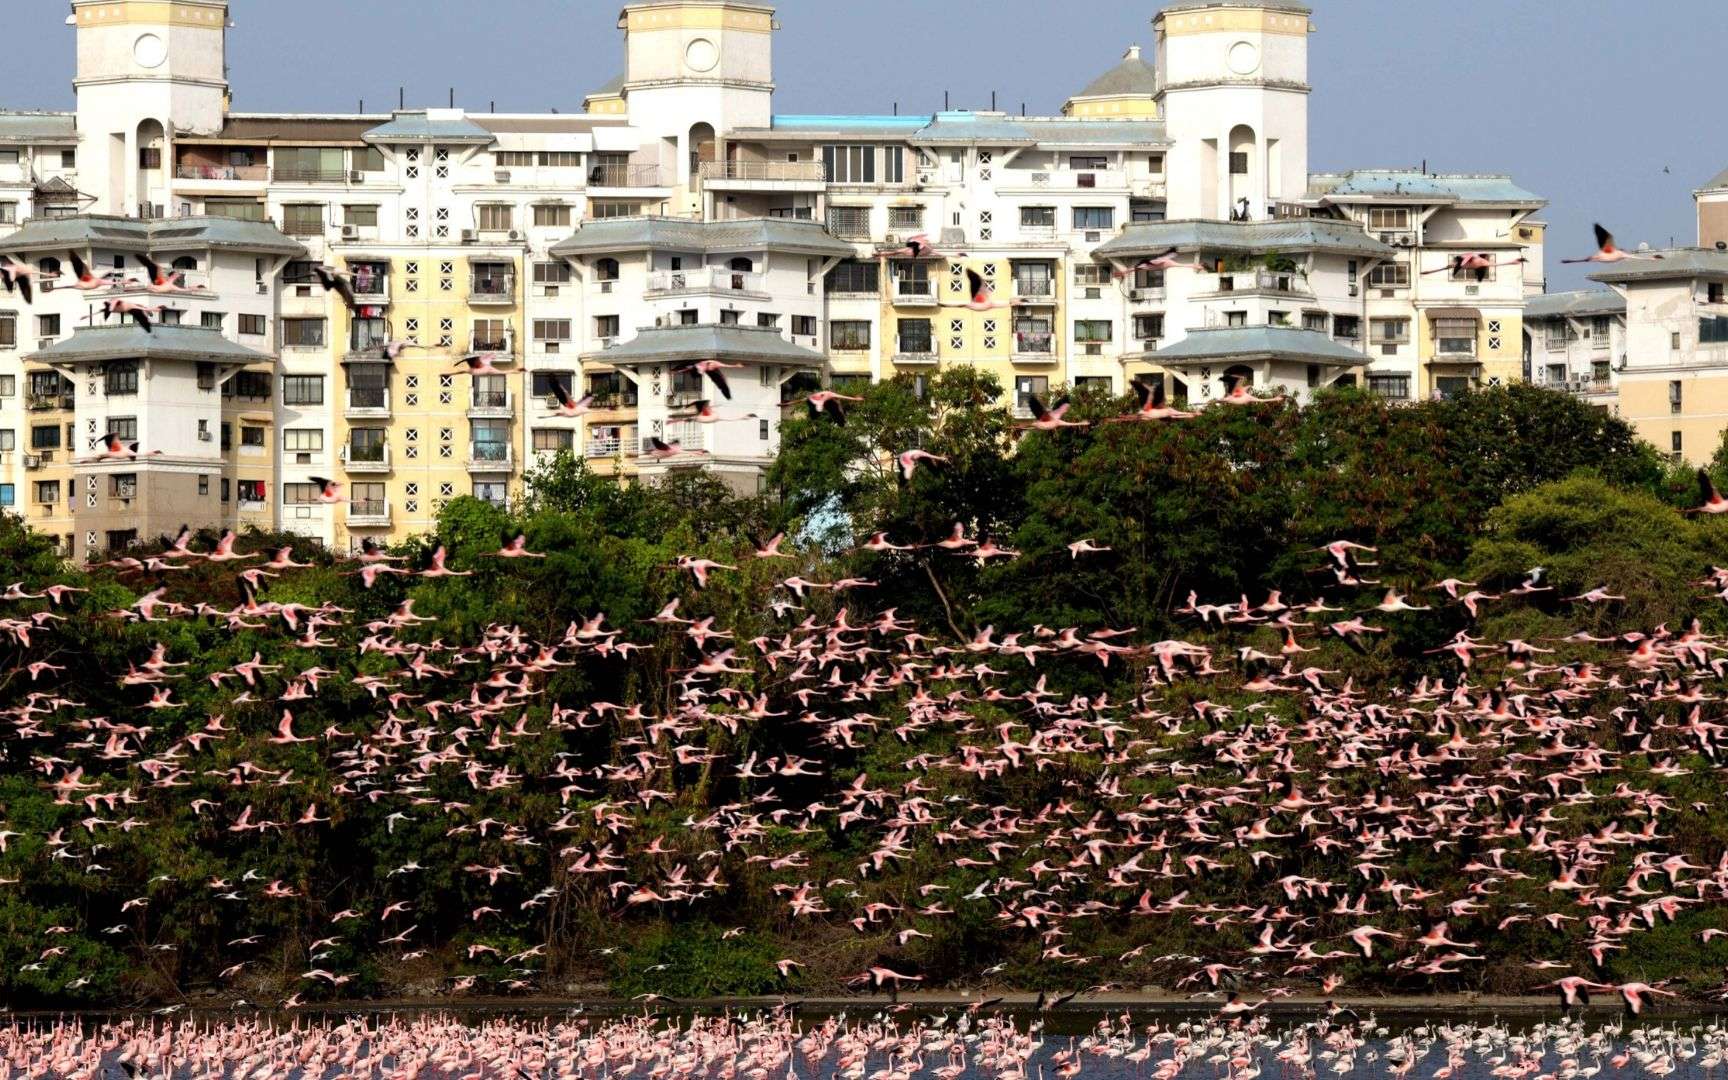 Confinement : spectaculaire rassemblement de flamants roses en Inde